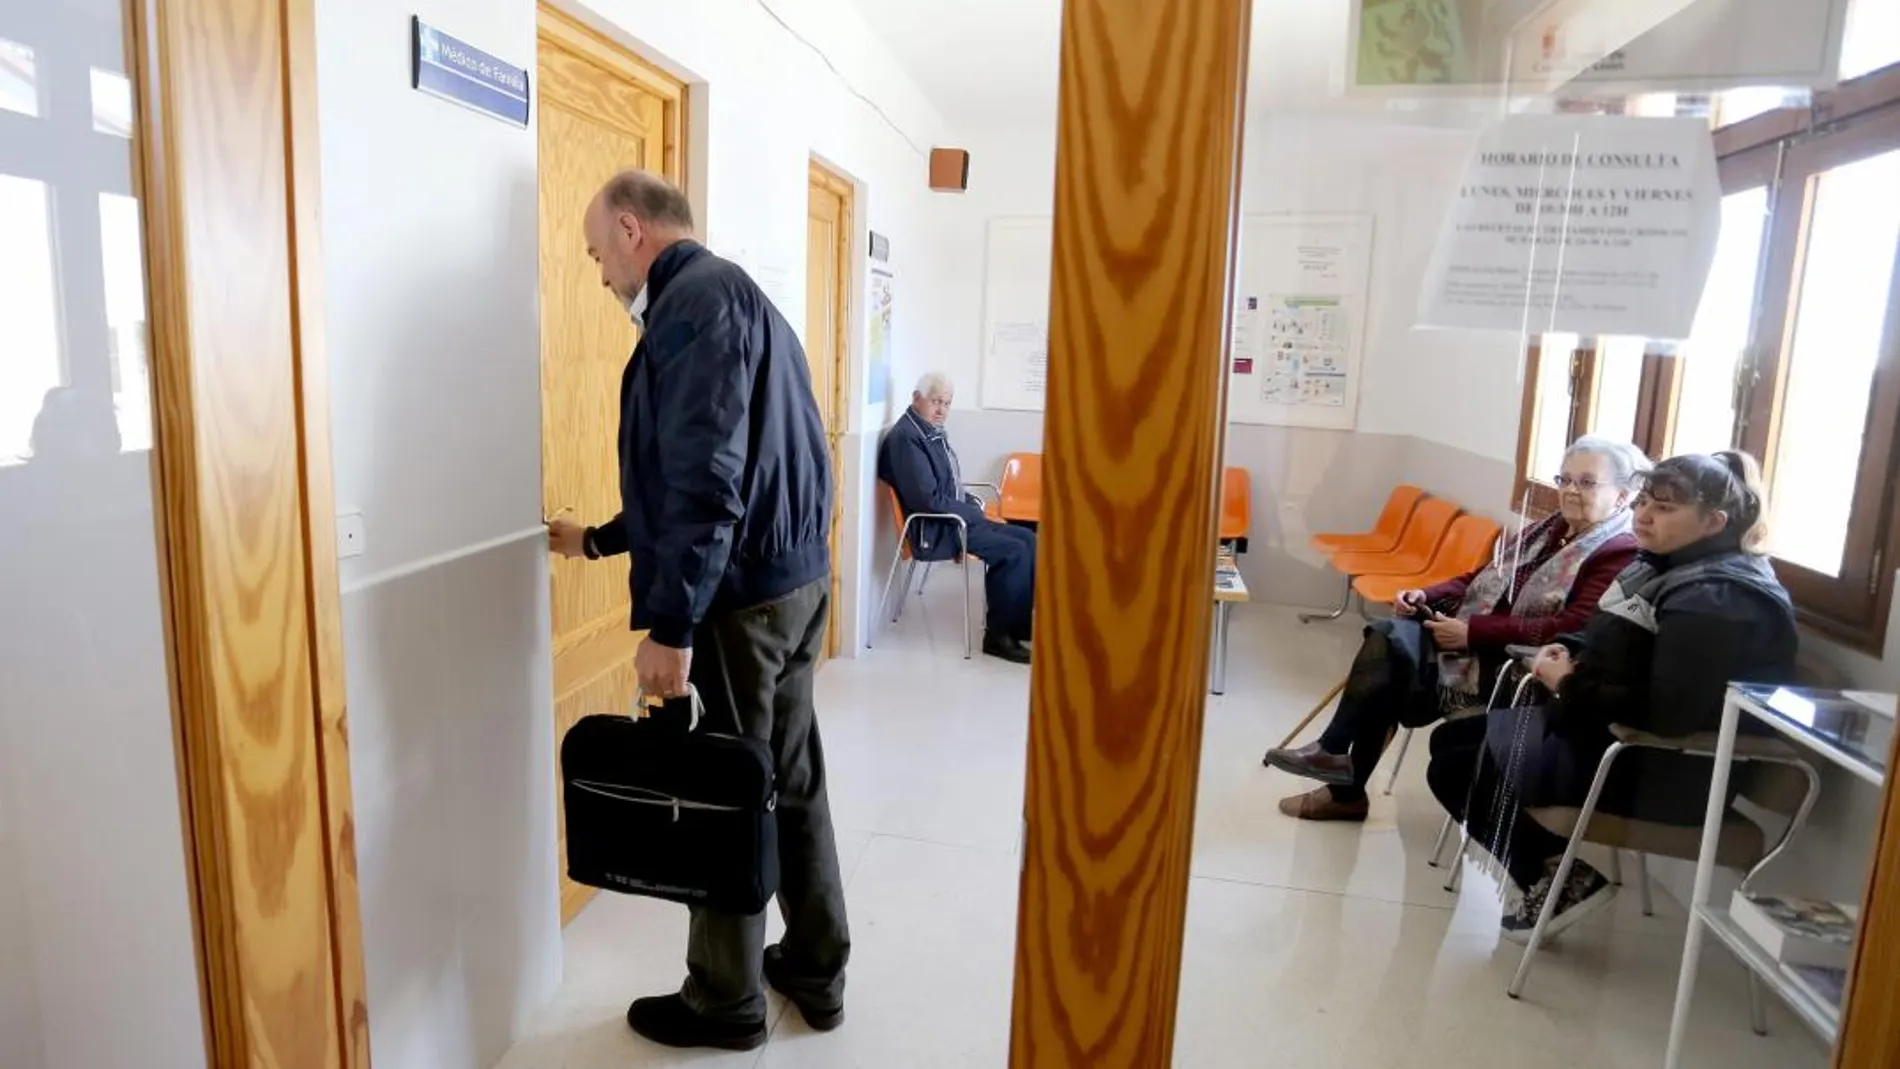 Un médico de familia llega a su consulta en la localidad vallisoletana de Viloria del Henar, donde varios pacientes le esperan para ser atendidos